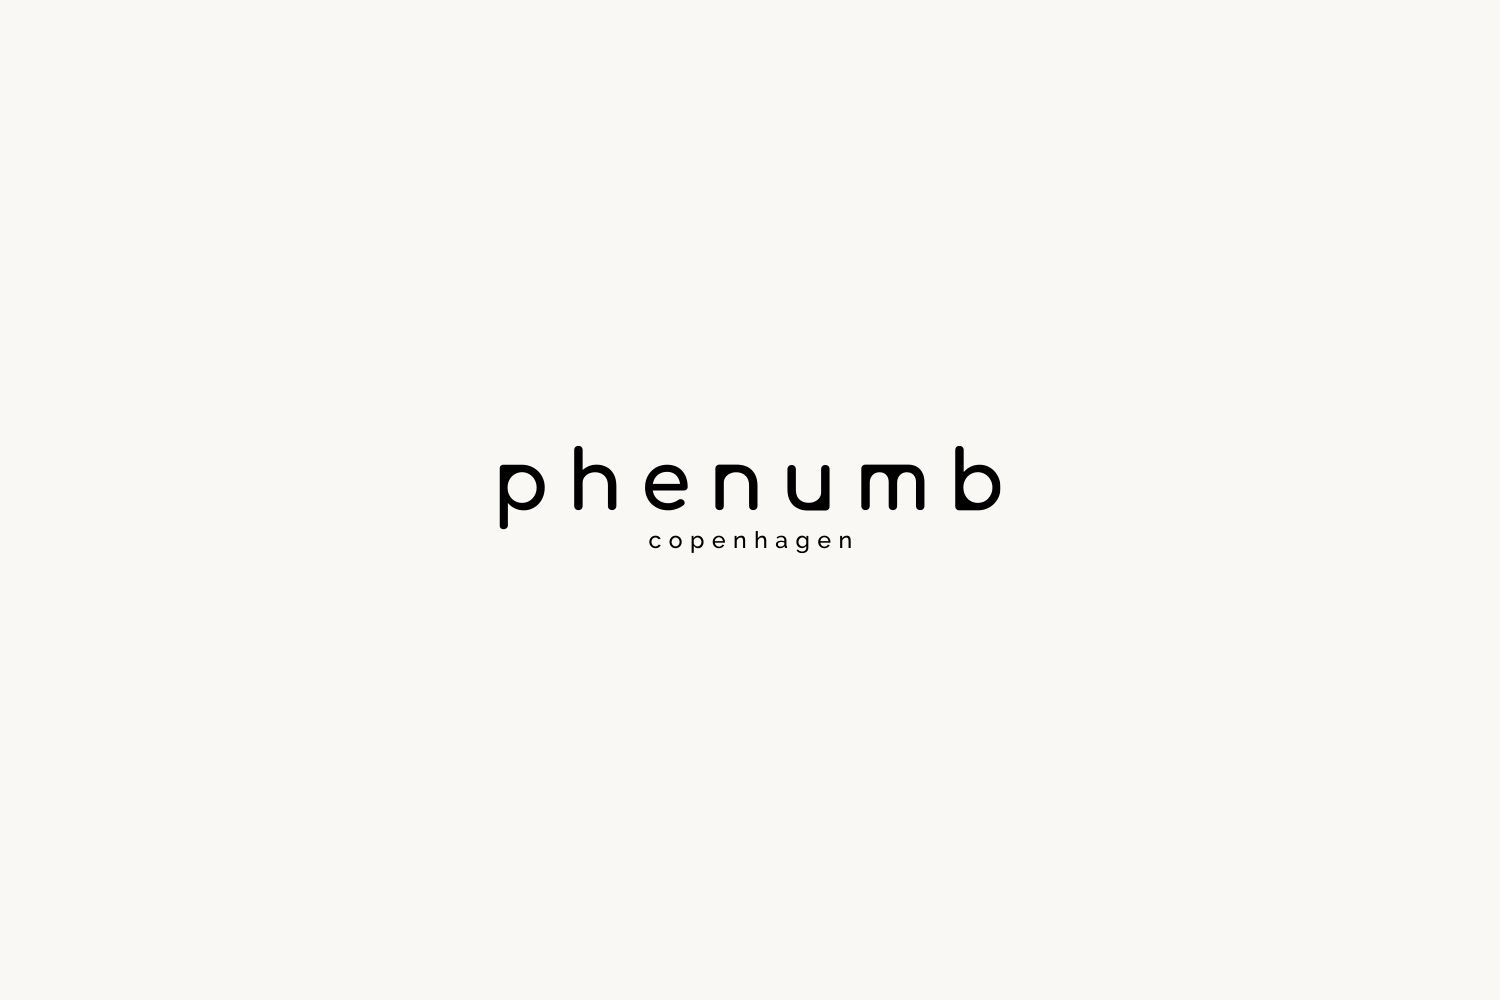 Phenumb